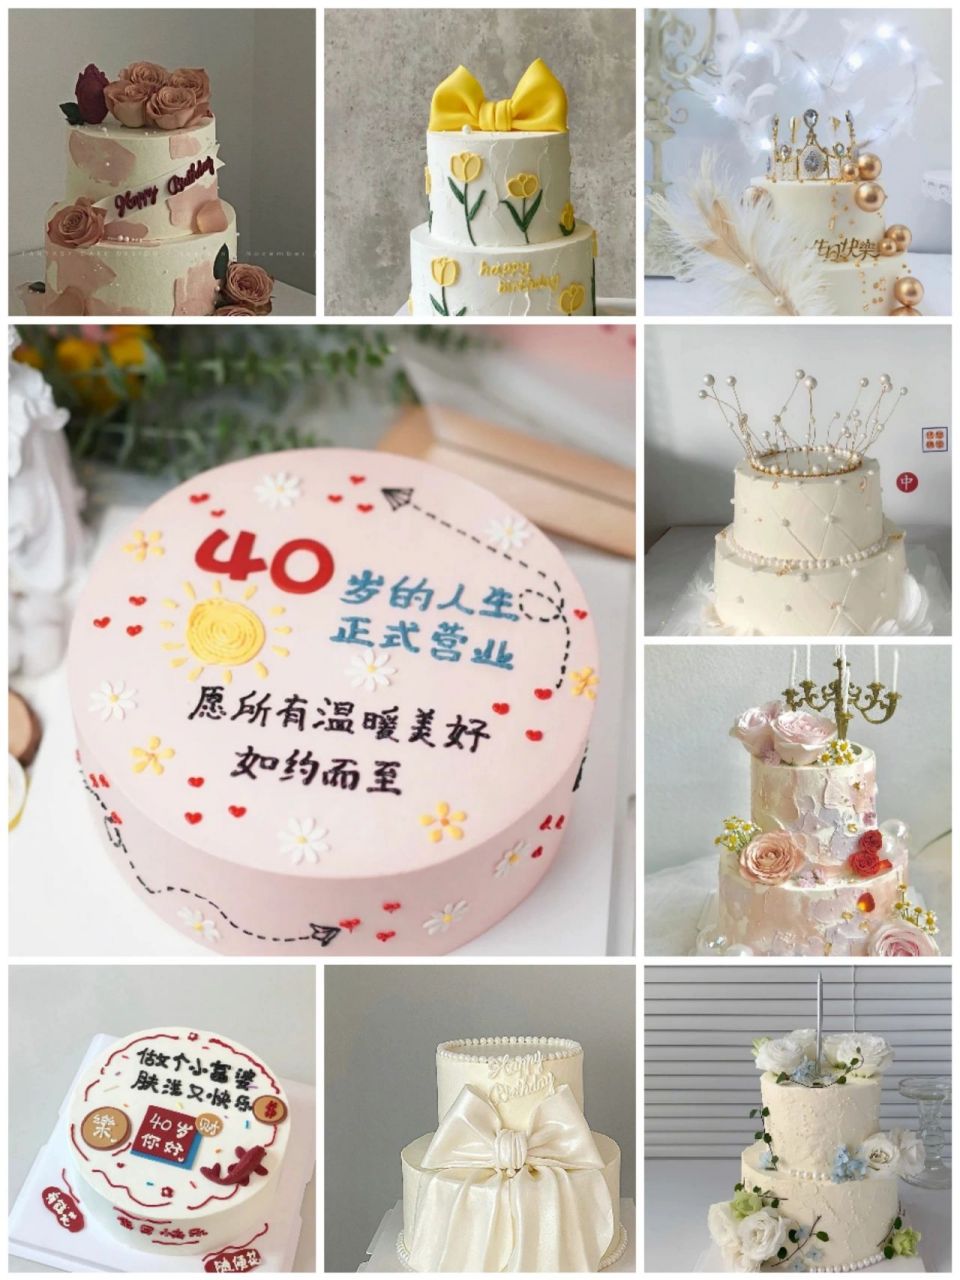 北京蛋糕定制‖40岁女士生日蛋糕 北京蛋糕定制